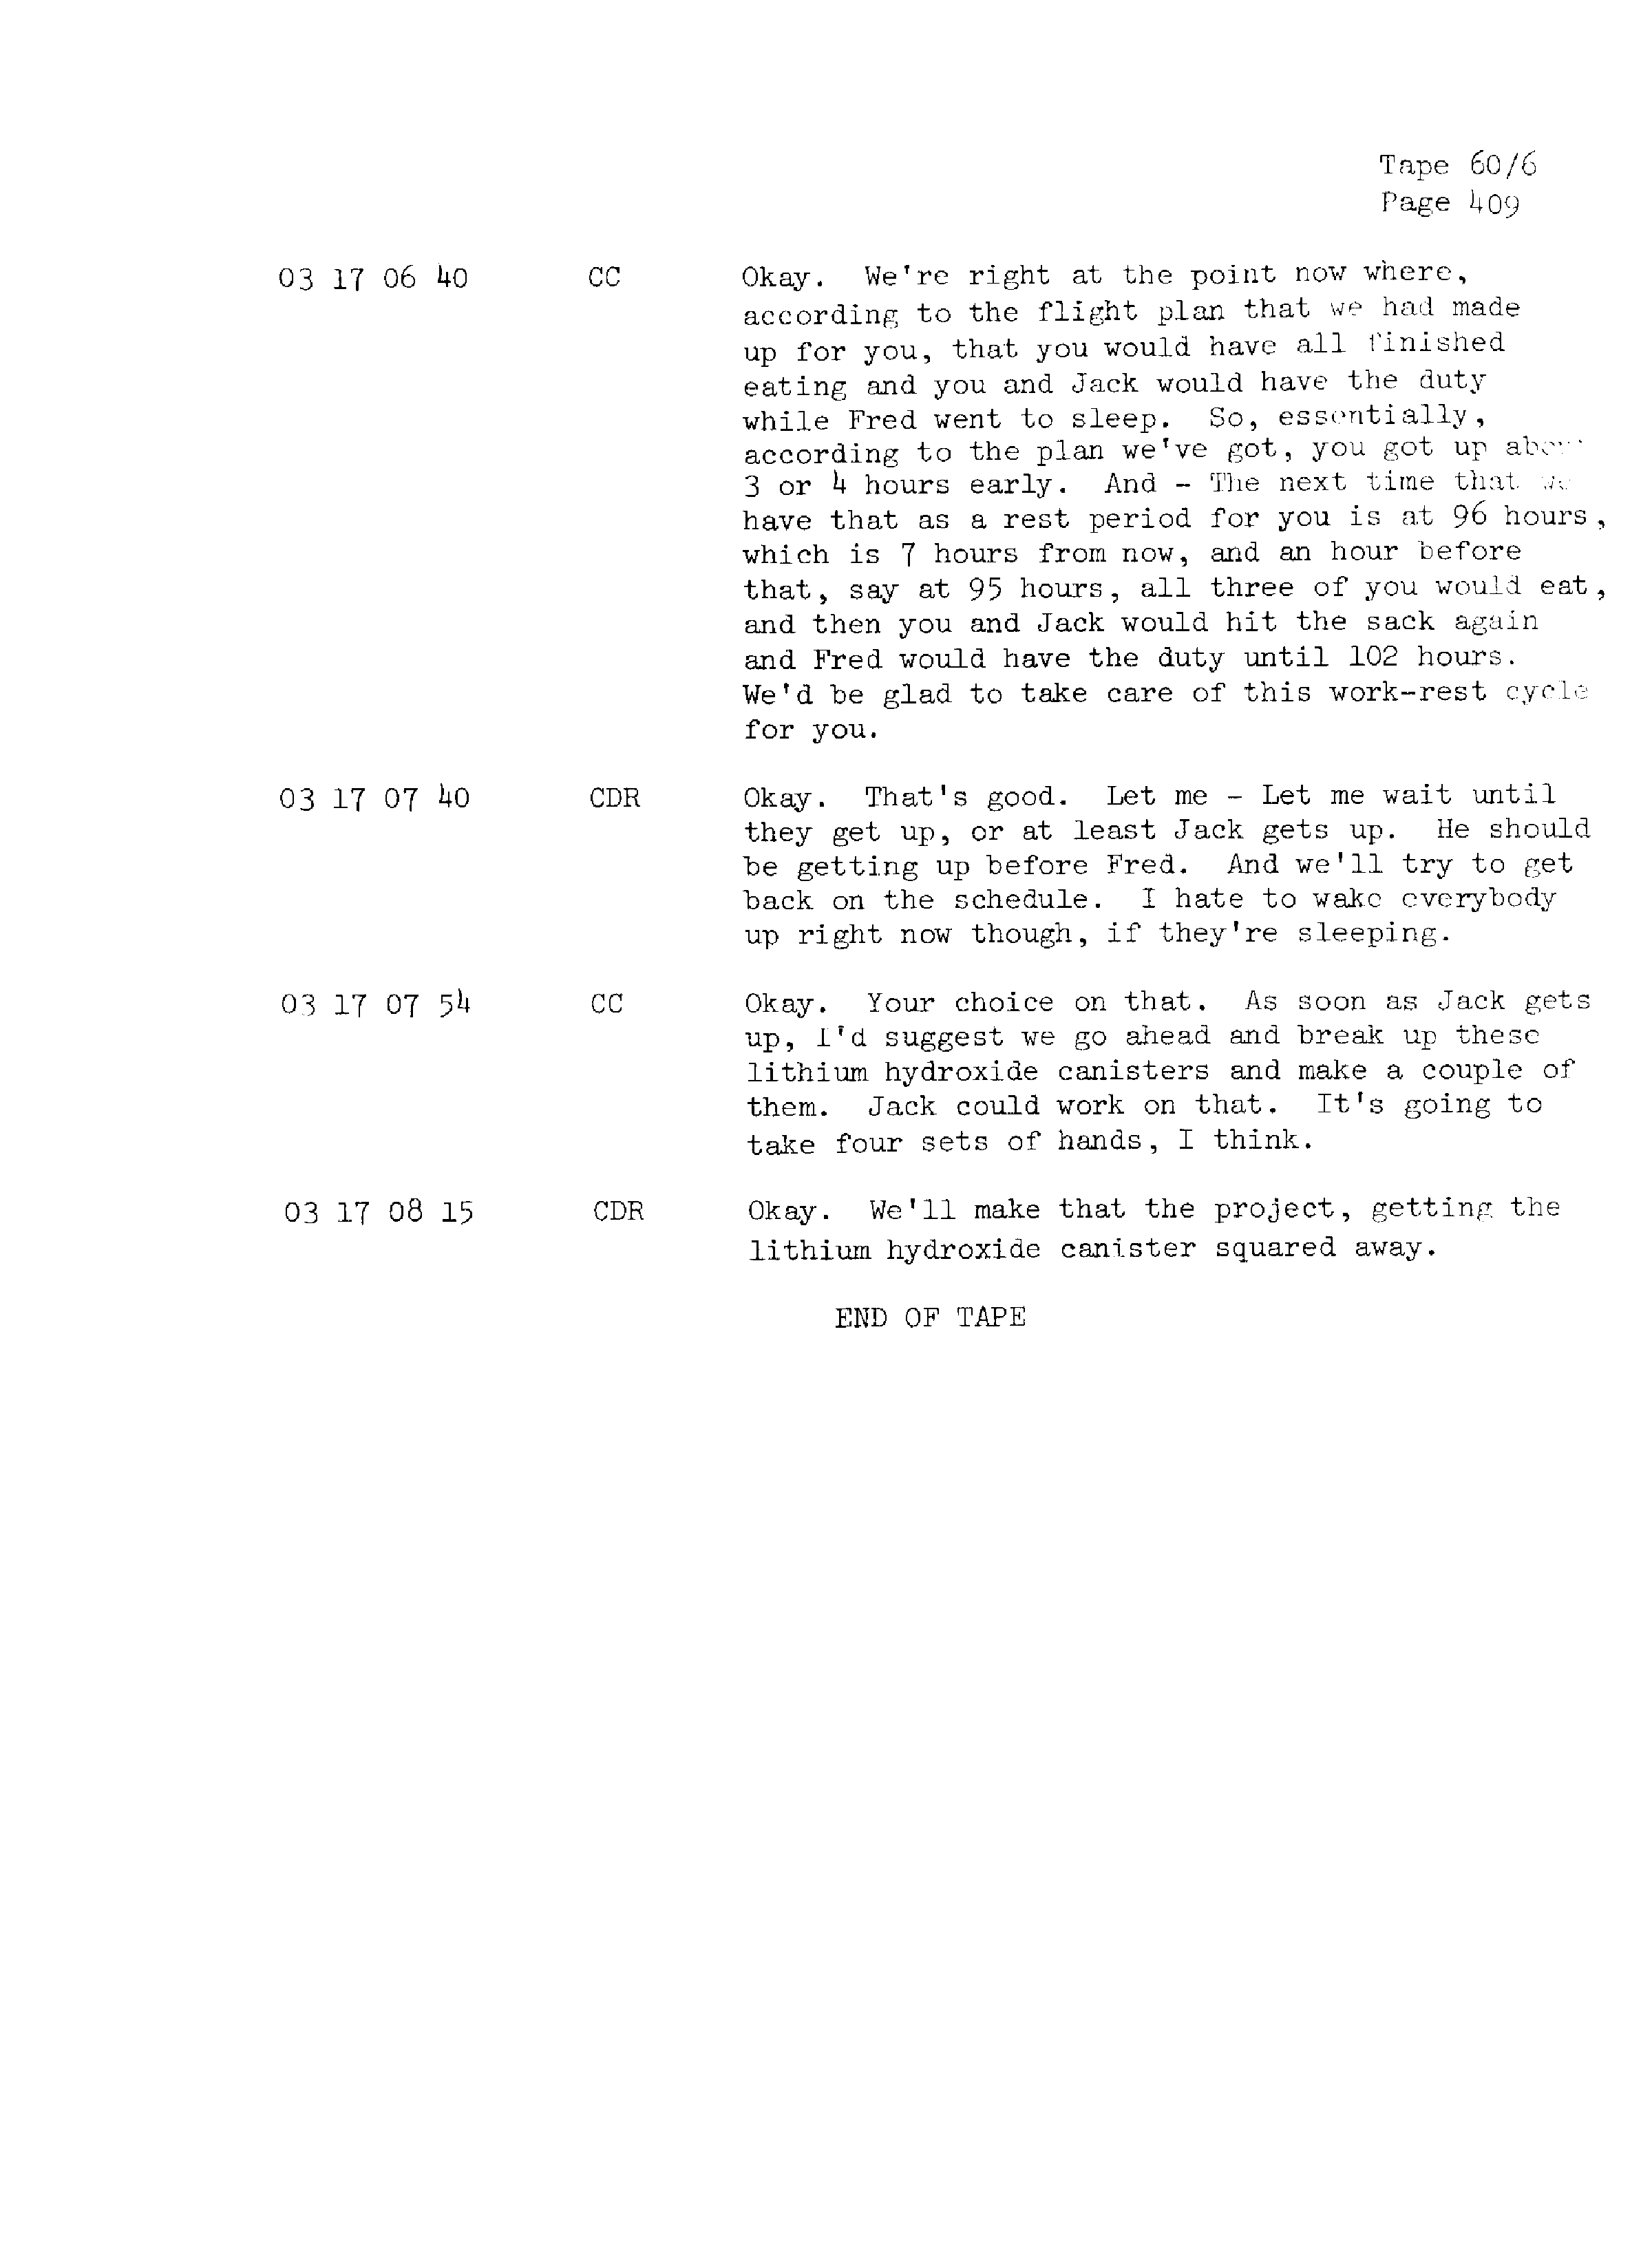 Page 416 of Apollo 13’s original transcript